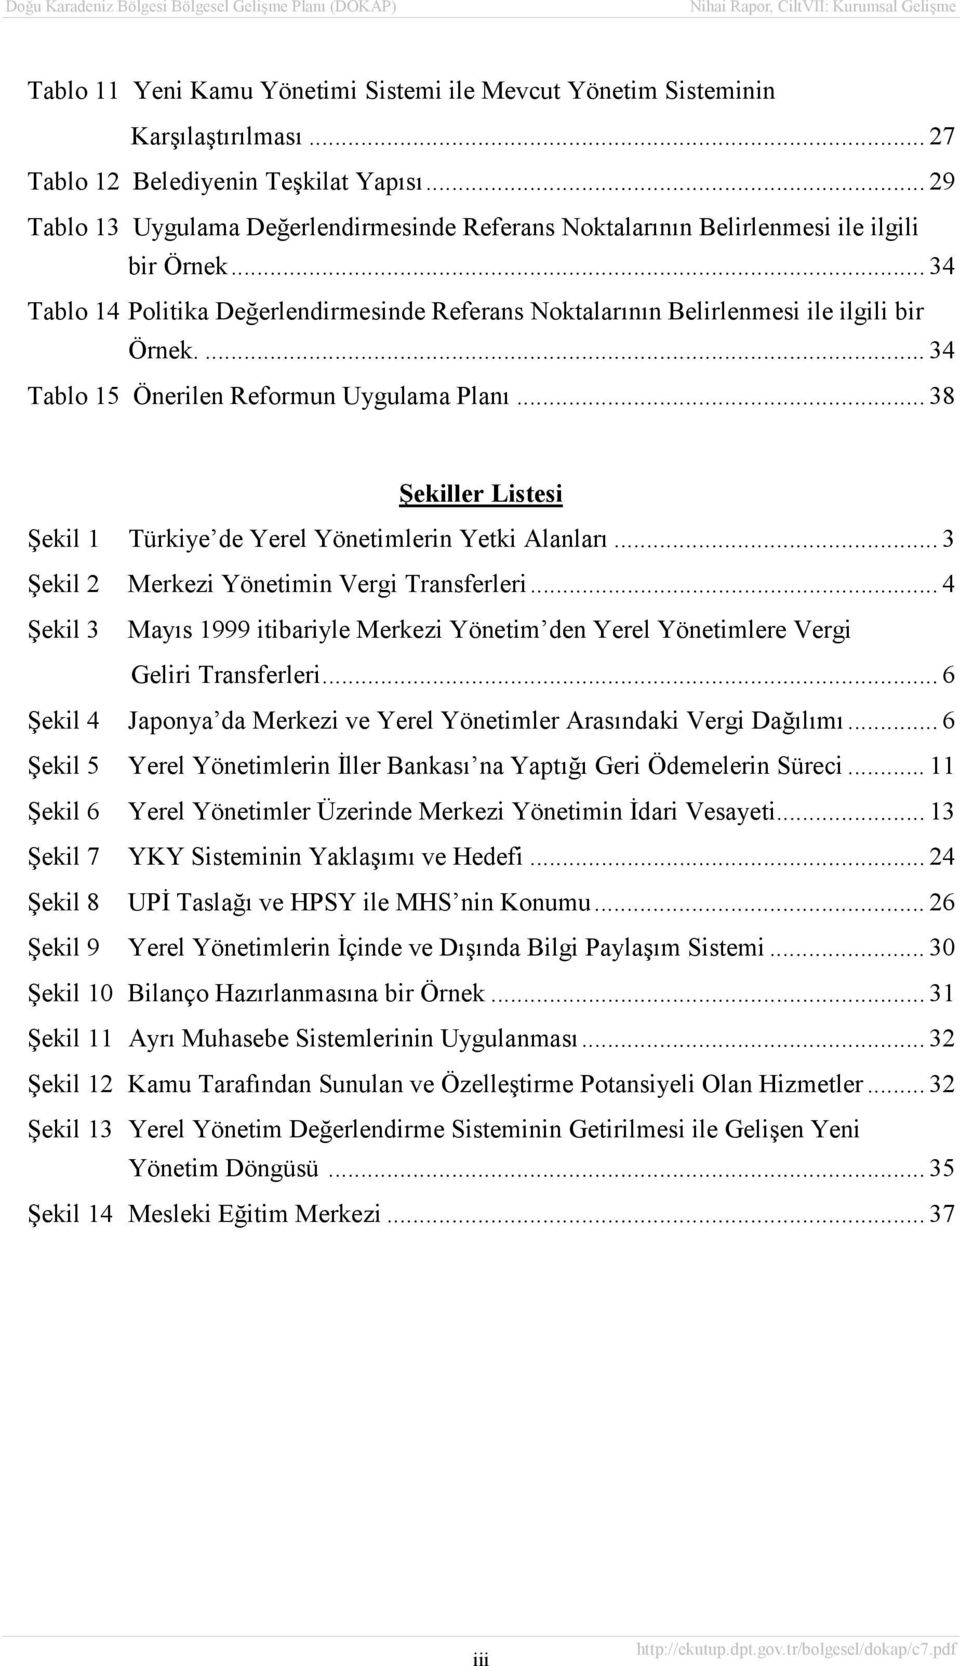 ... 34 Tablo 15 Önerilen Reformun Uygulama Planõ... 38 Şekiller Listesi Şekil 1 Türkiye de Yerel Yönetimlerin Yetki Alanlarõ... 3 Şekil 2 Merkezi Yönetimin Vergi Transferleri.